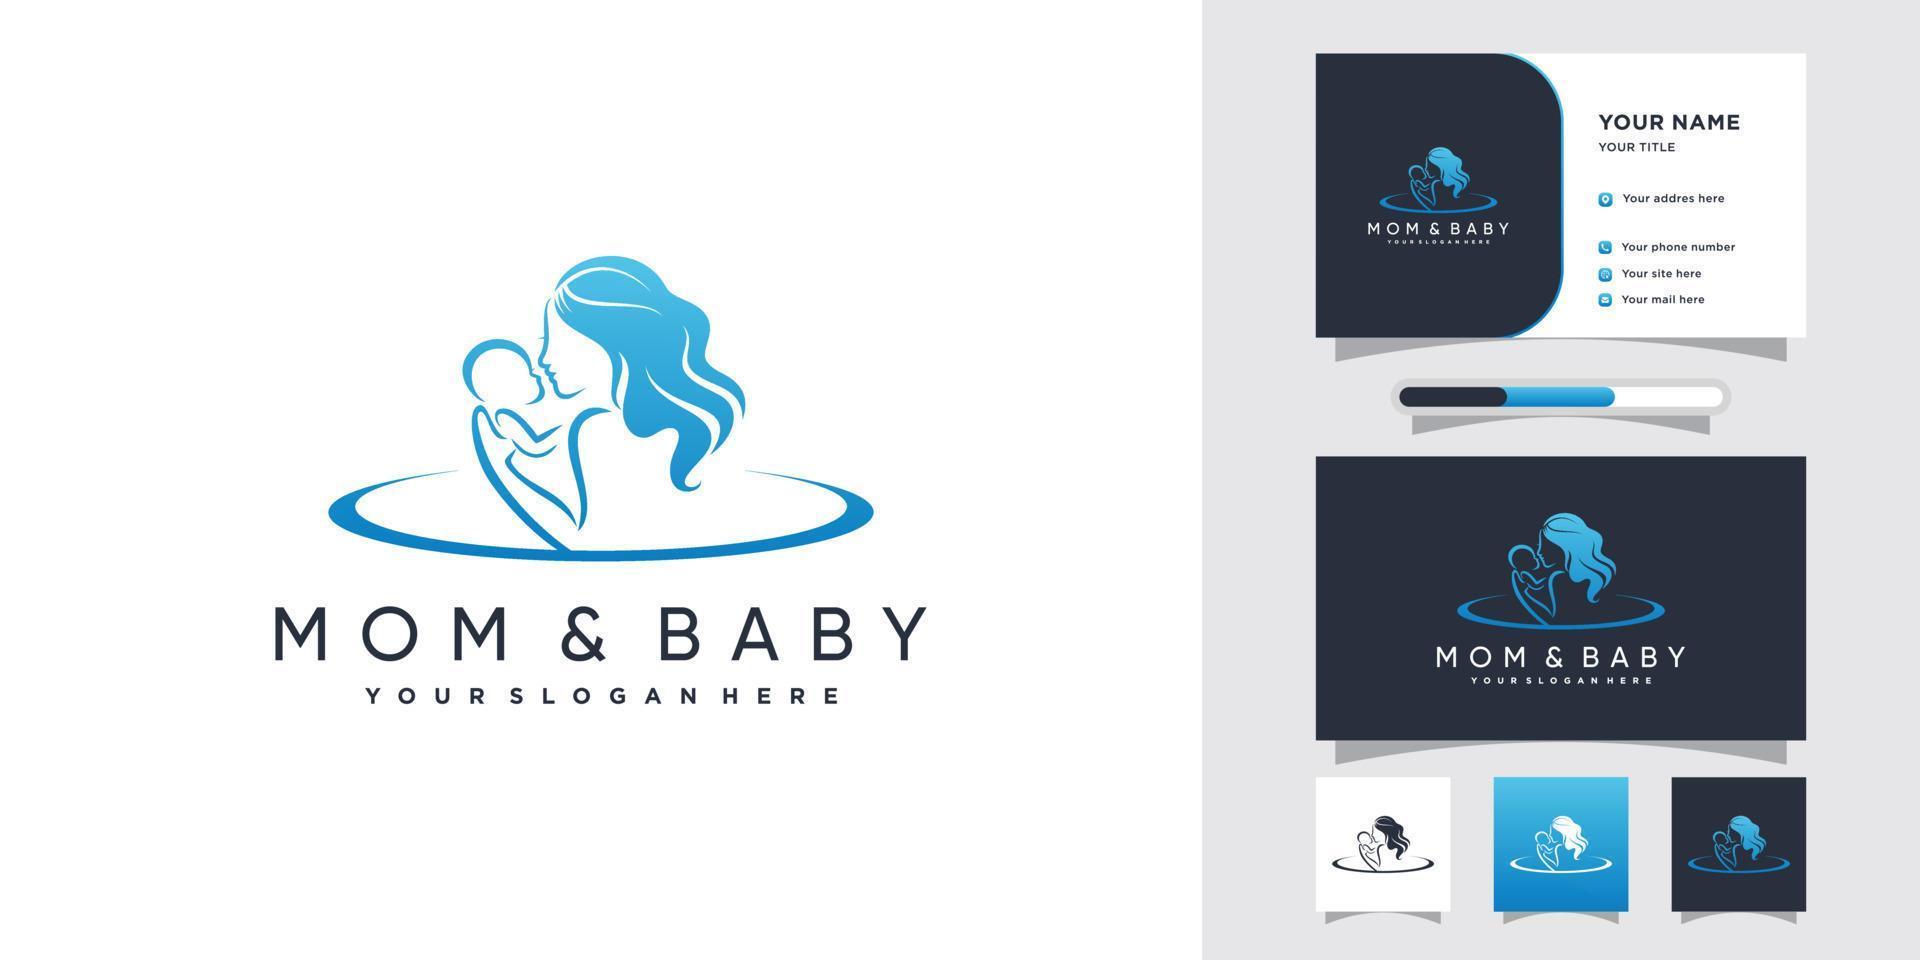 création de logo maman et bébé avec concept créatif et modèle de carte de visite vecteur premium